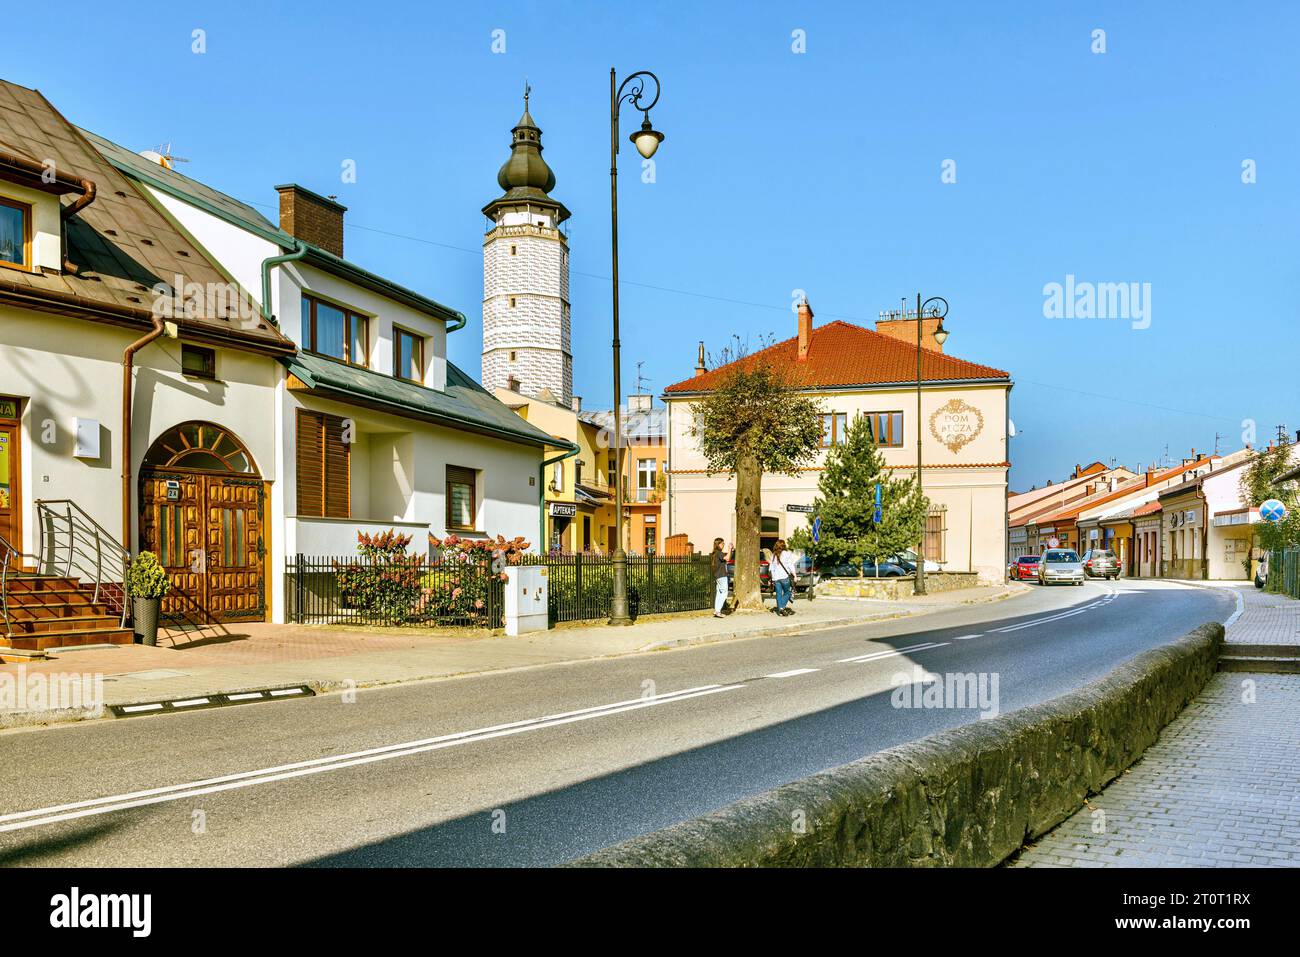 Frammento della città vecchia. A causa della sua storia, la città di Bec è anche chiamata la "Perla dei Carpazi" o "piccola Cracovia". Foto Stock